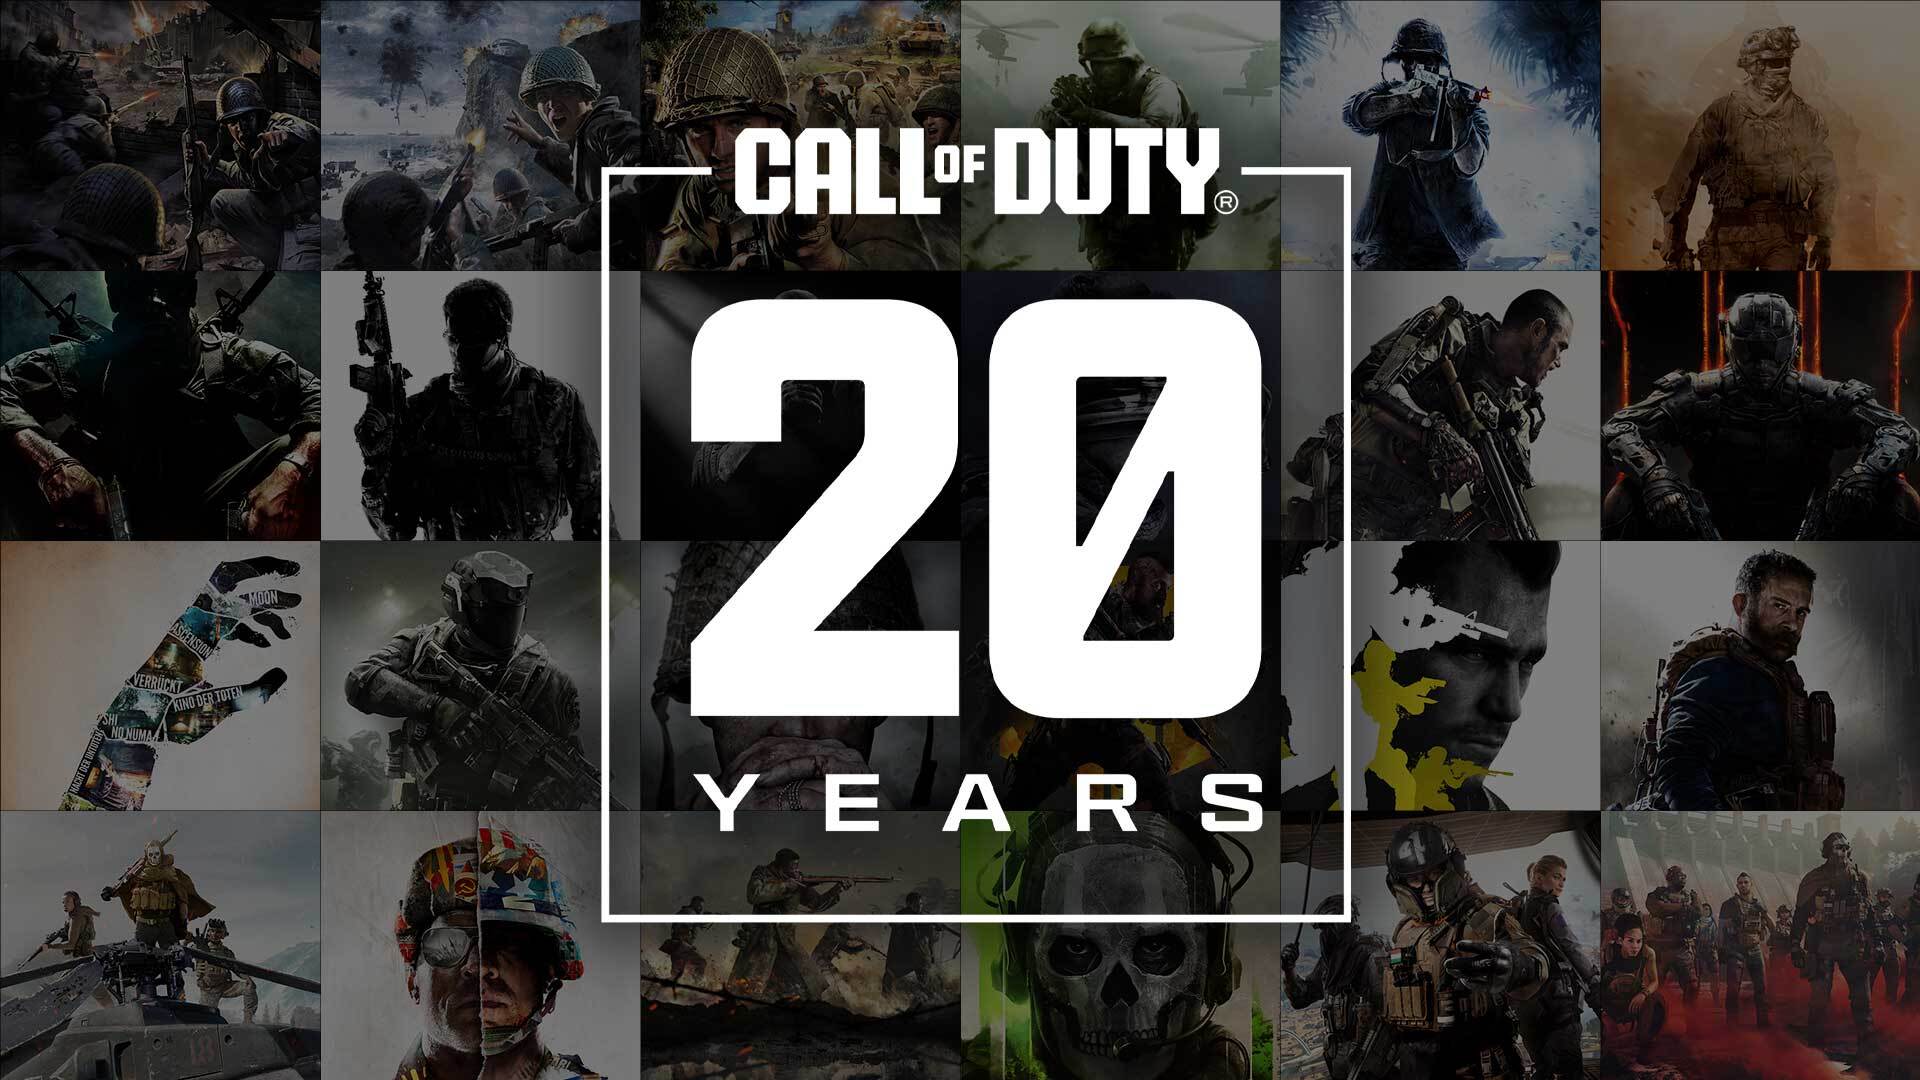 Azi se împlinesc 20 ani de la lansarea lui Call of Duty, jocul care a început cea mai de succes franciză de jocuri video de război